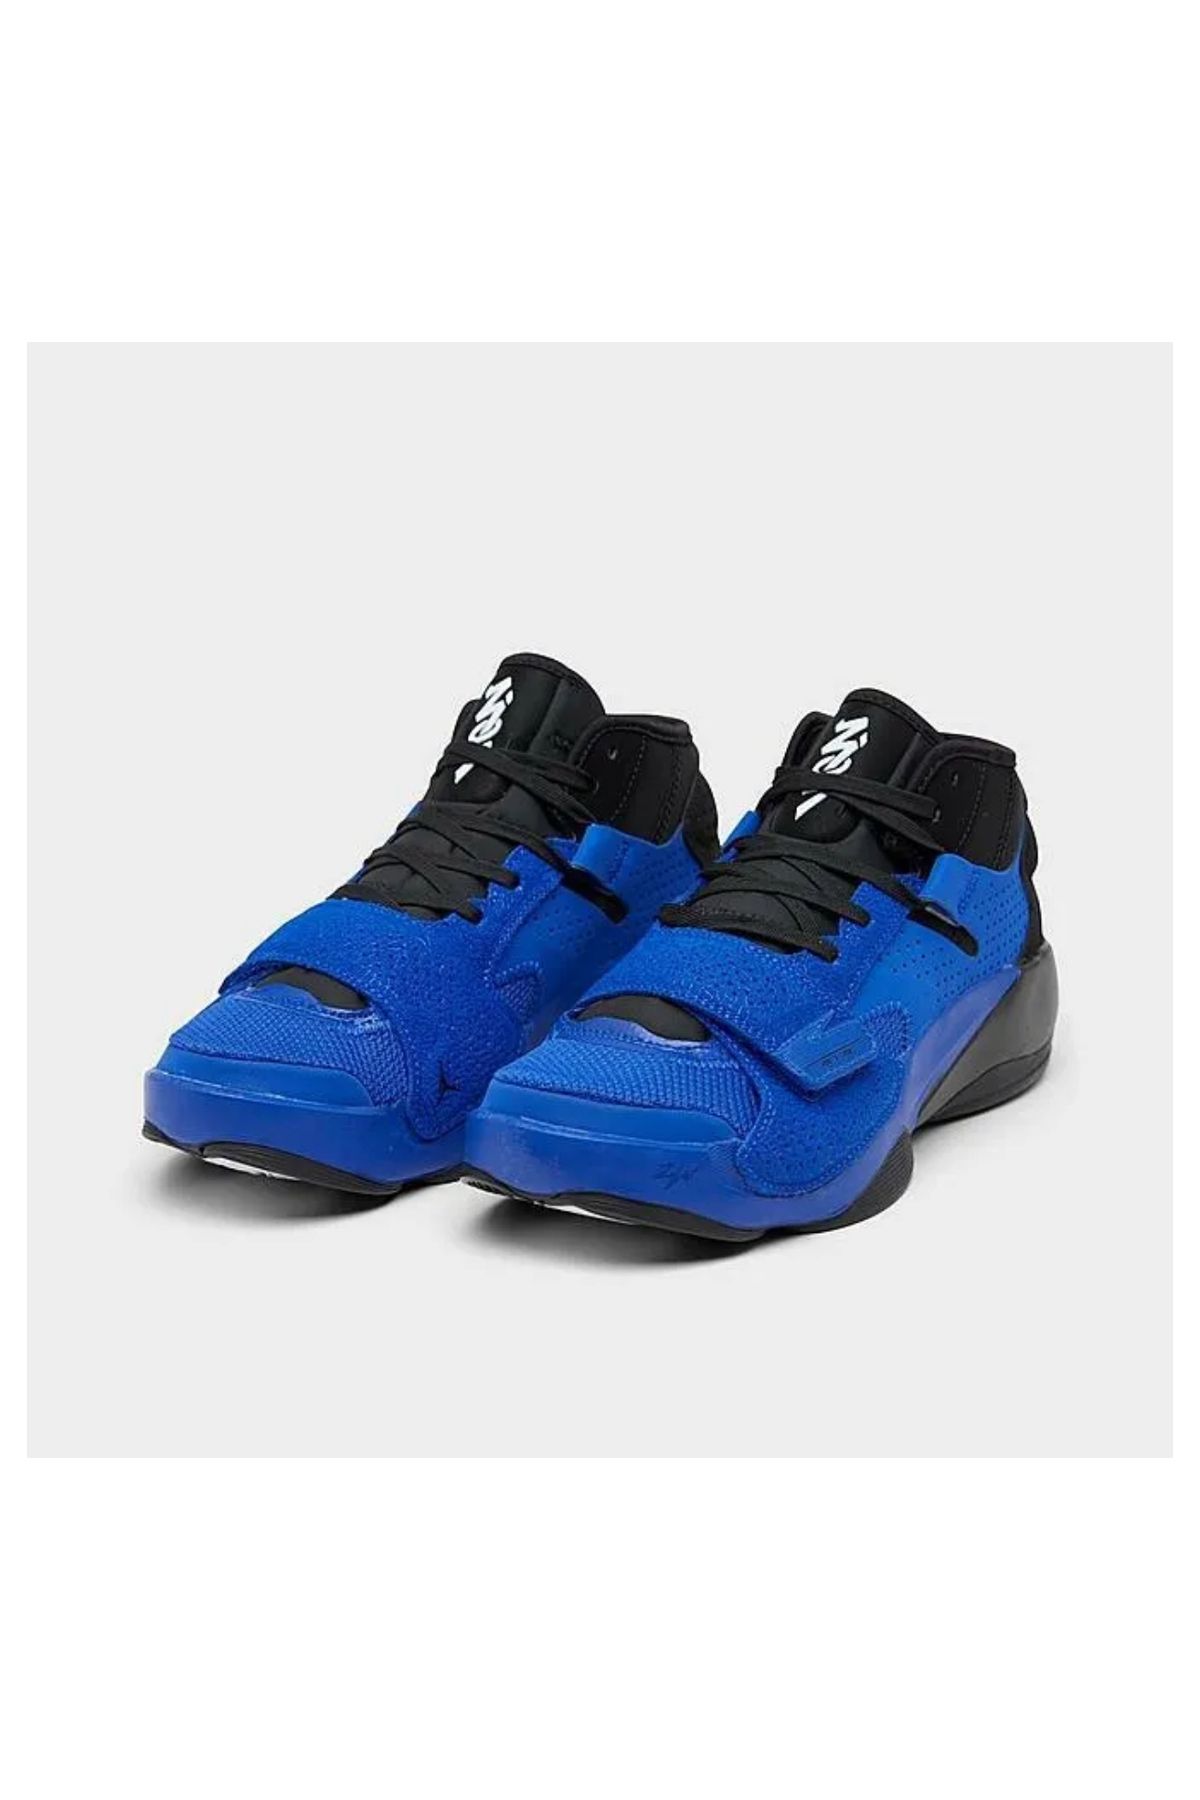 Nike Jordan Zion 2 Basketbol Ayakkabısı (Dar Kalıp)